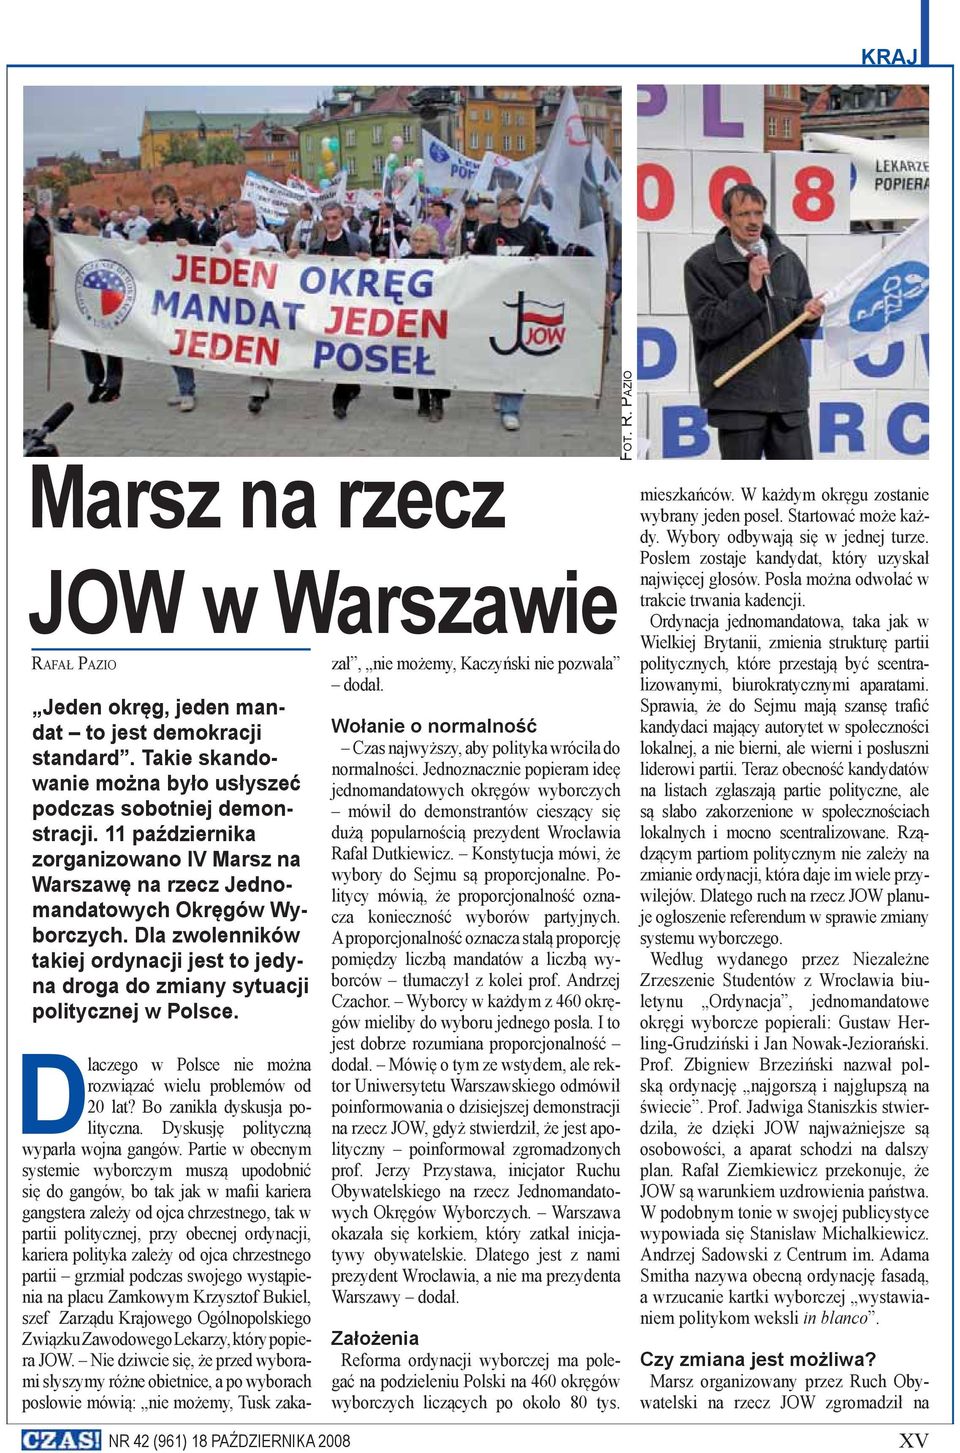 Dlaczego w Polsce nie można rozwiązać wielu problemów od 20 lat? Bo zanikła dyskusja polityczna. Dyskusję polityczną wyparła wojna gangów.